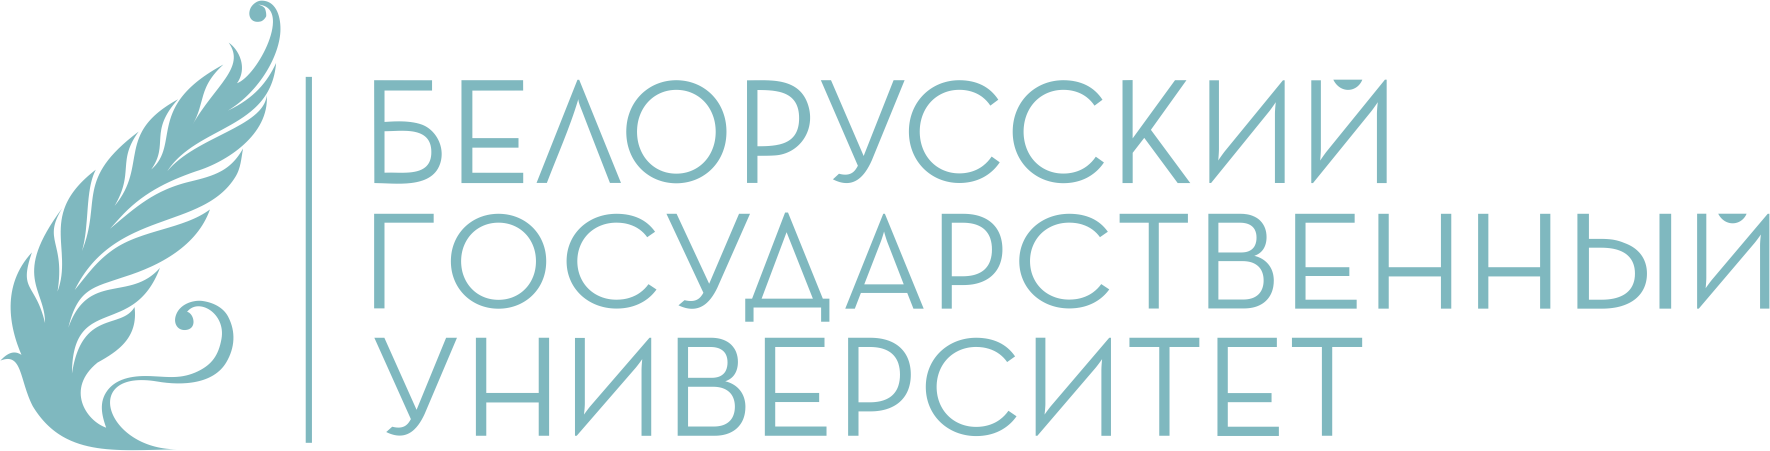 Портал иб бгу. БГУ логотип. Белорусский государственный университет эмблема. Бурятский государственный университет логотип.